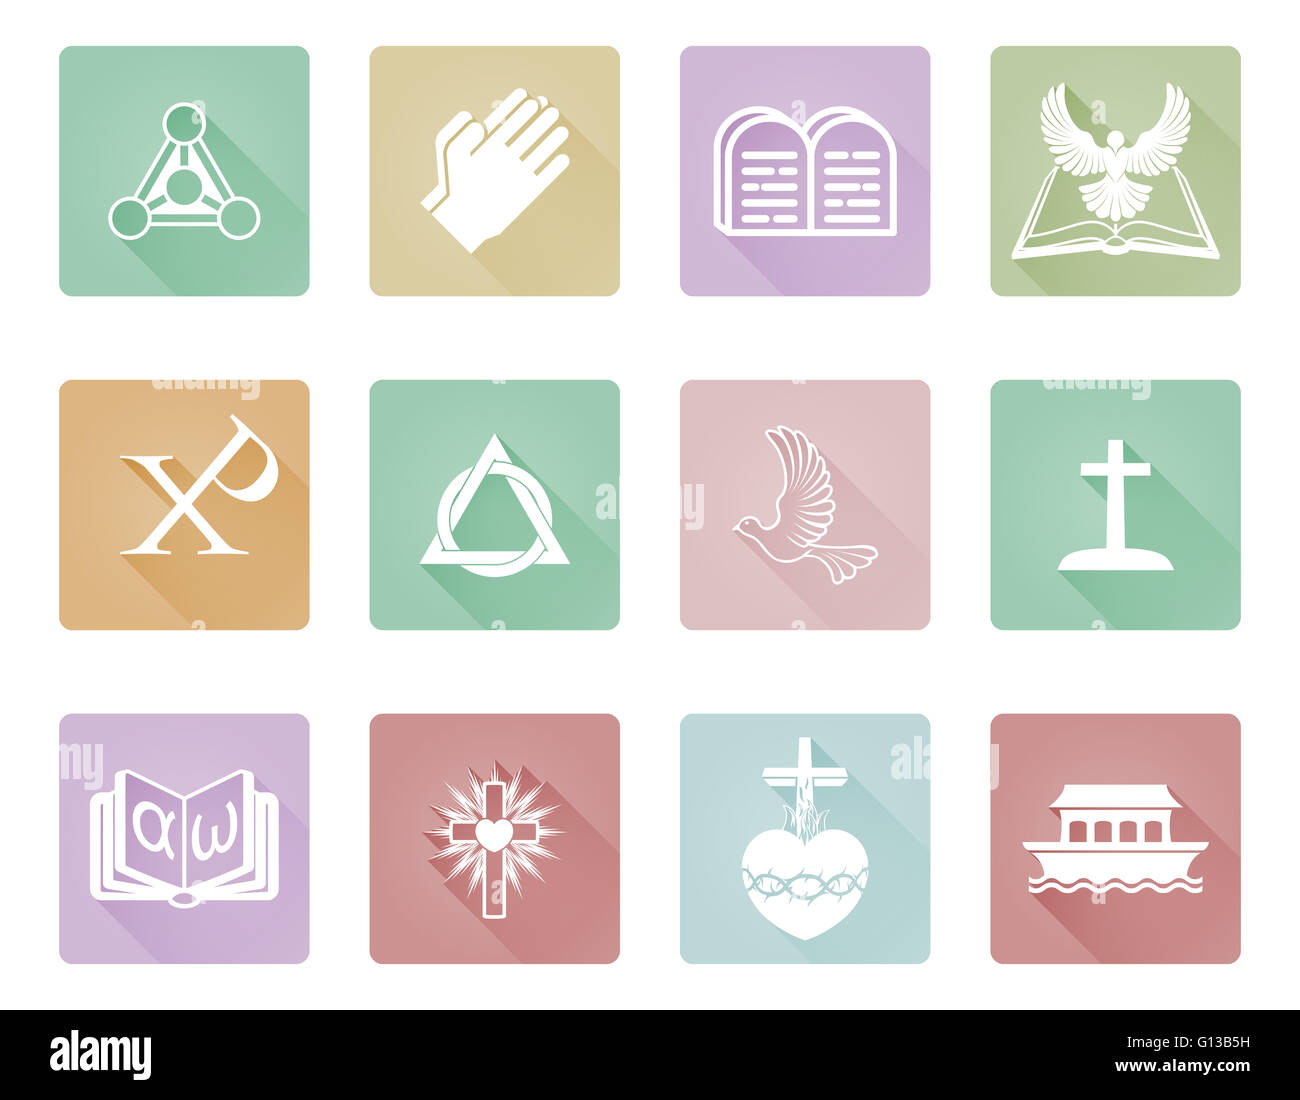 Un ensemble d'icônes et symboles chrétiens y compris les mains qui prient, chi rho, arche et alpha omega Banque D'Images